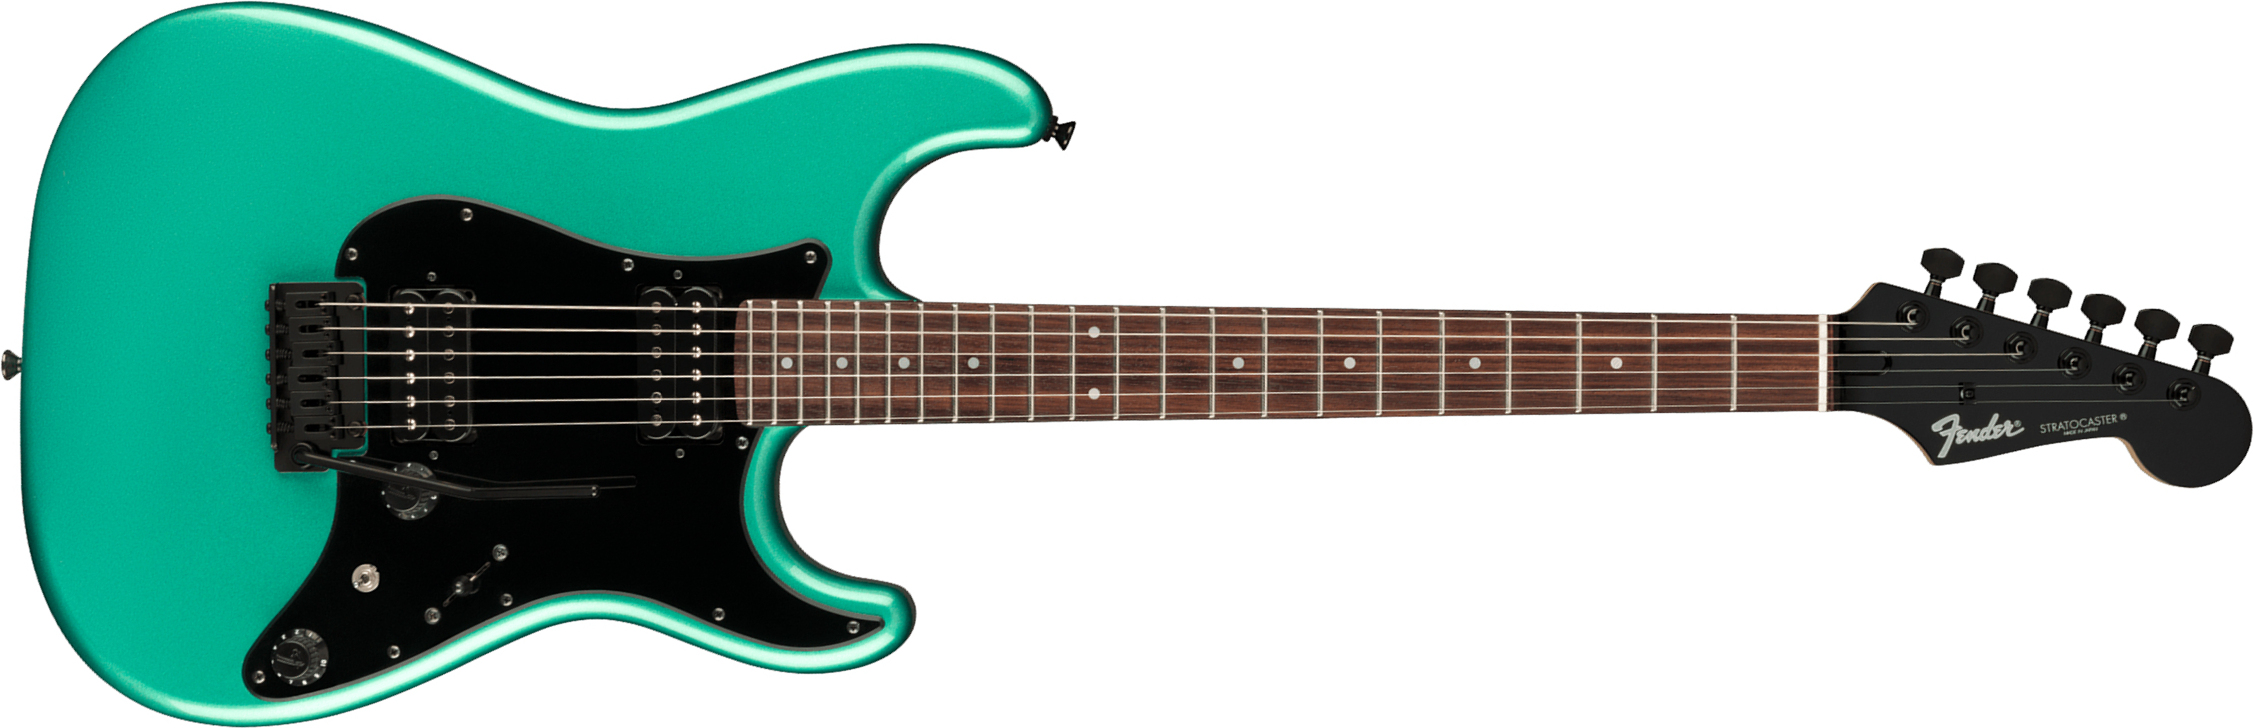 Fender Strat Boxer Hh Jap Trem Rw +housse - Sherwood Green Metallic - Guitarra eléctrica con forma de str. - Main picture